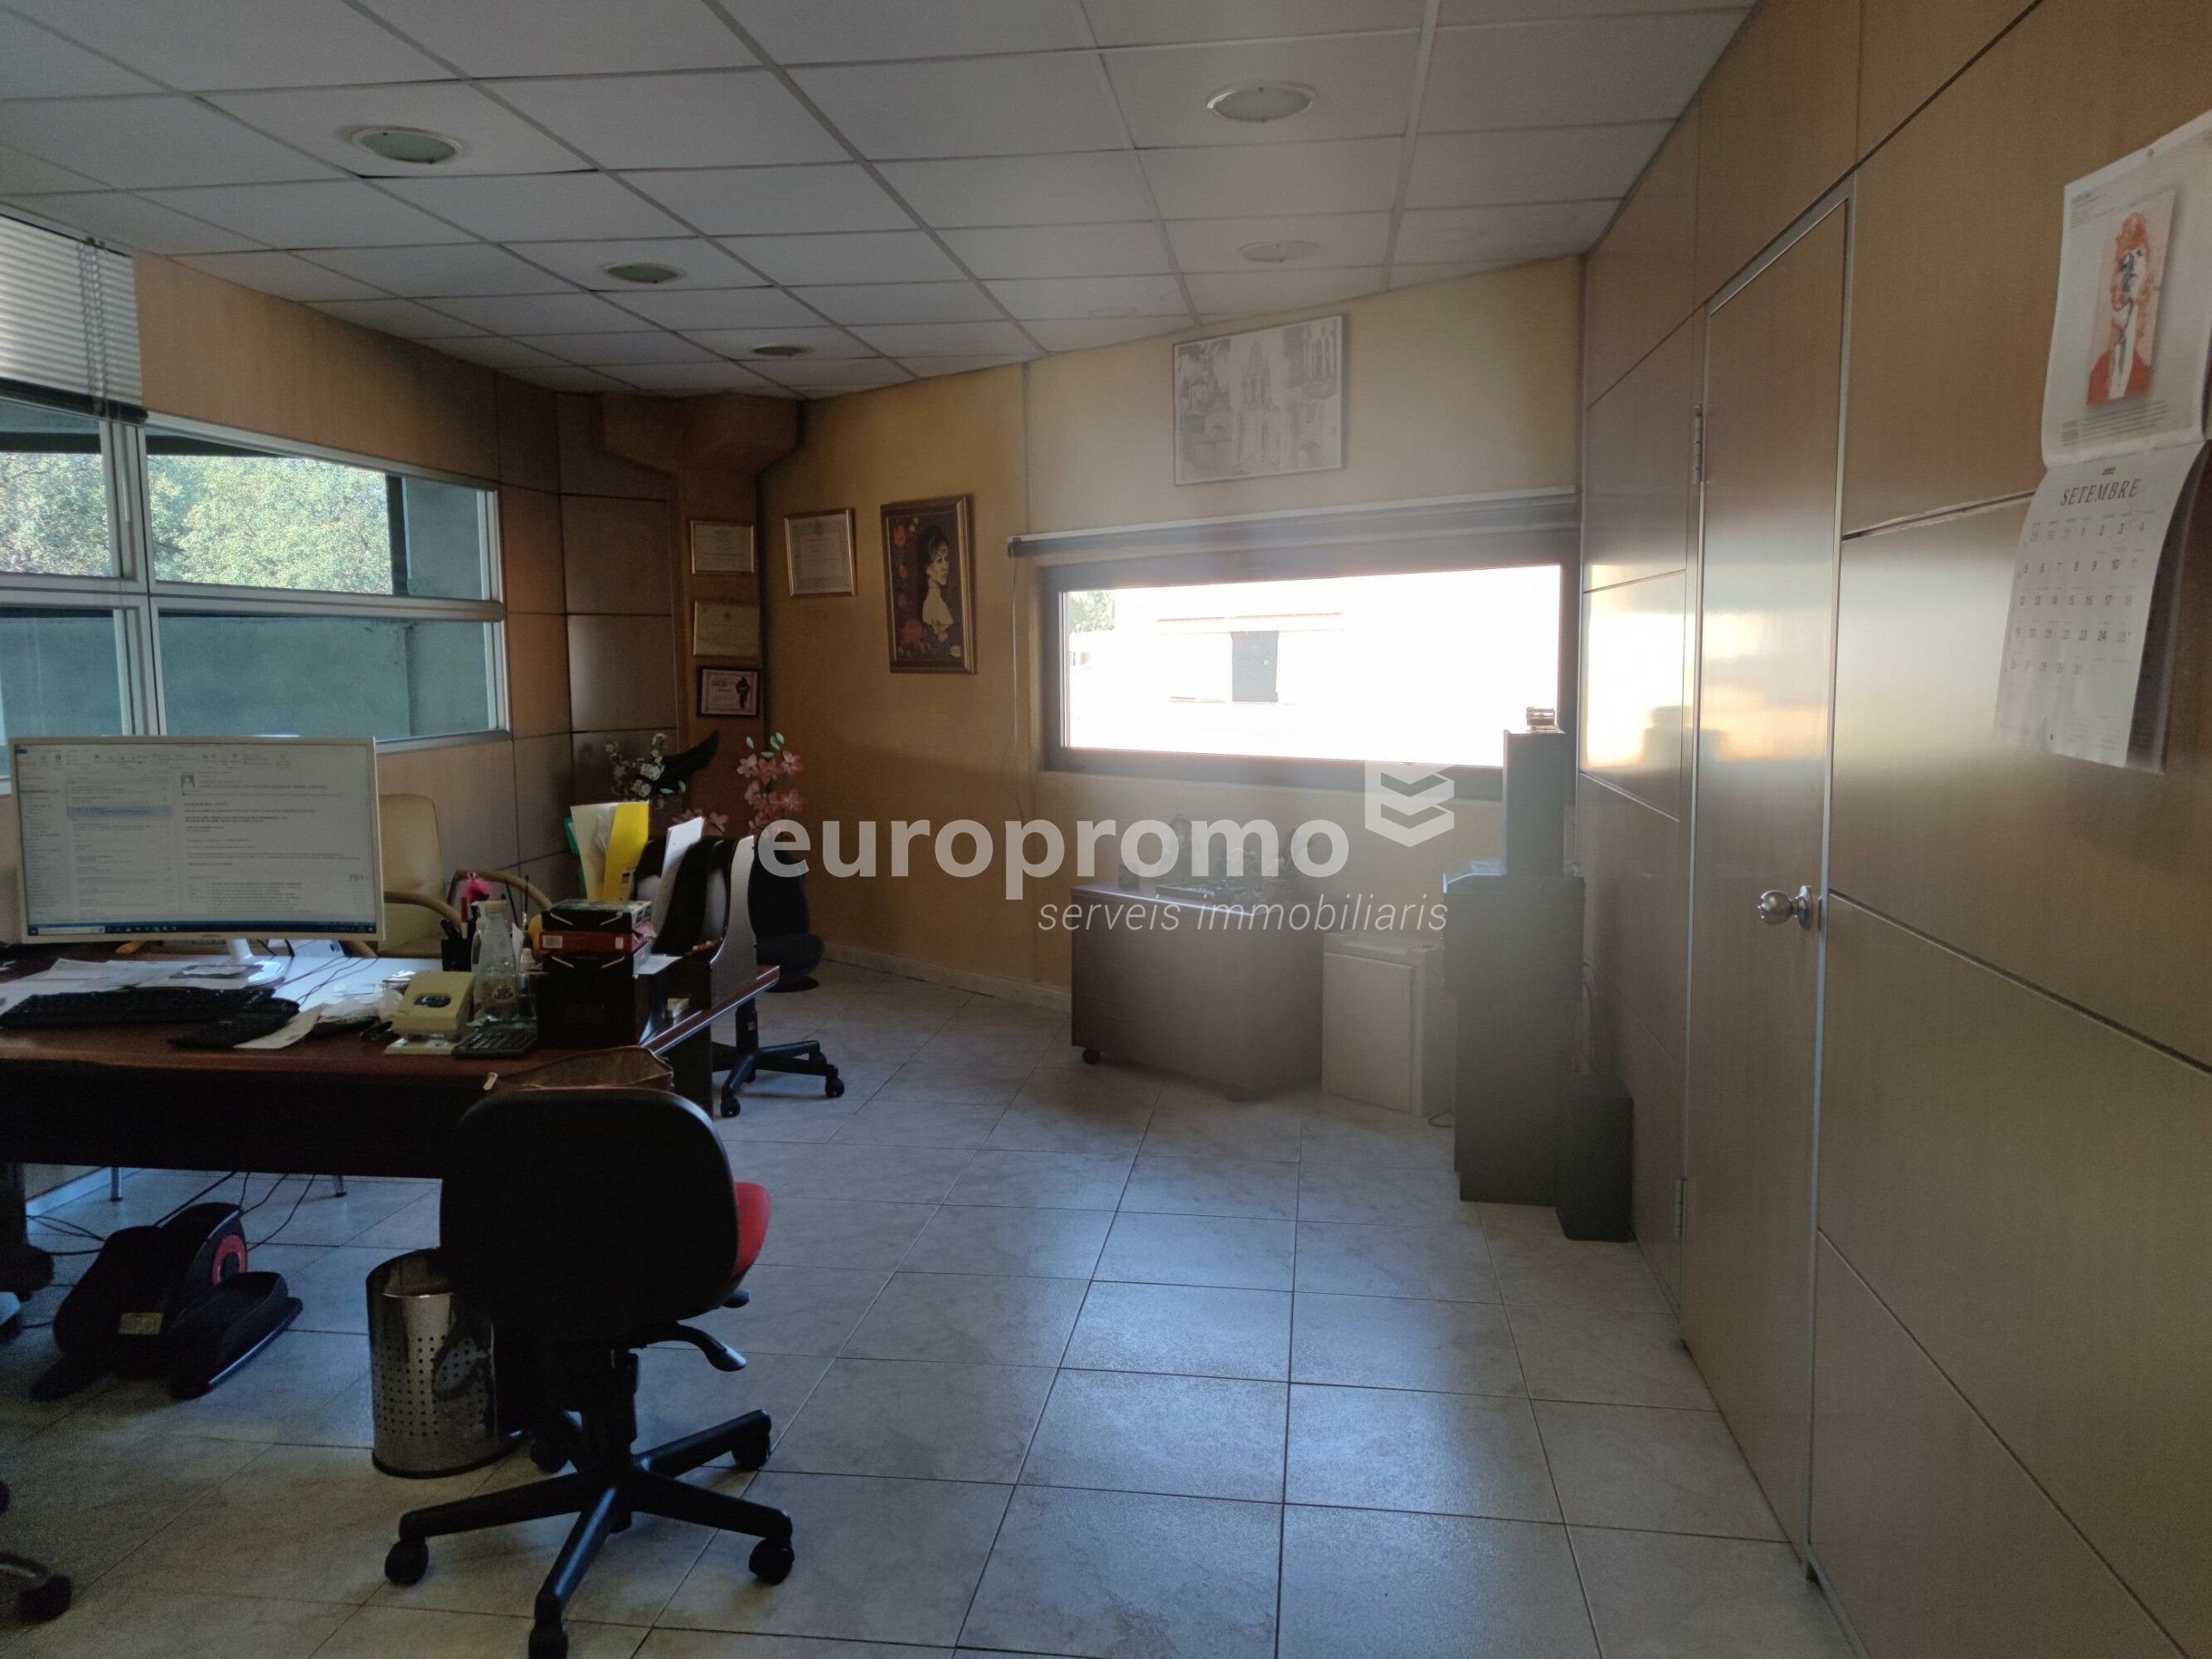 Oficines amb local comercial i magatzem  al Pol. Ind. Torre Mirona - Montfullà